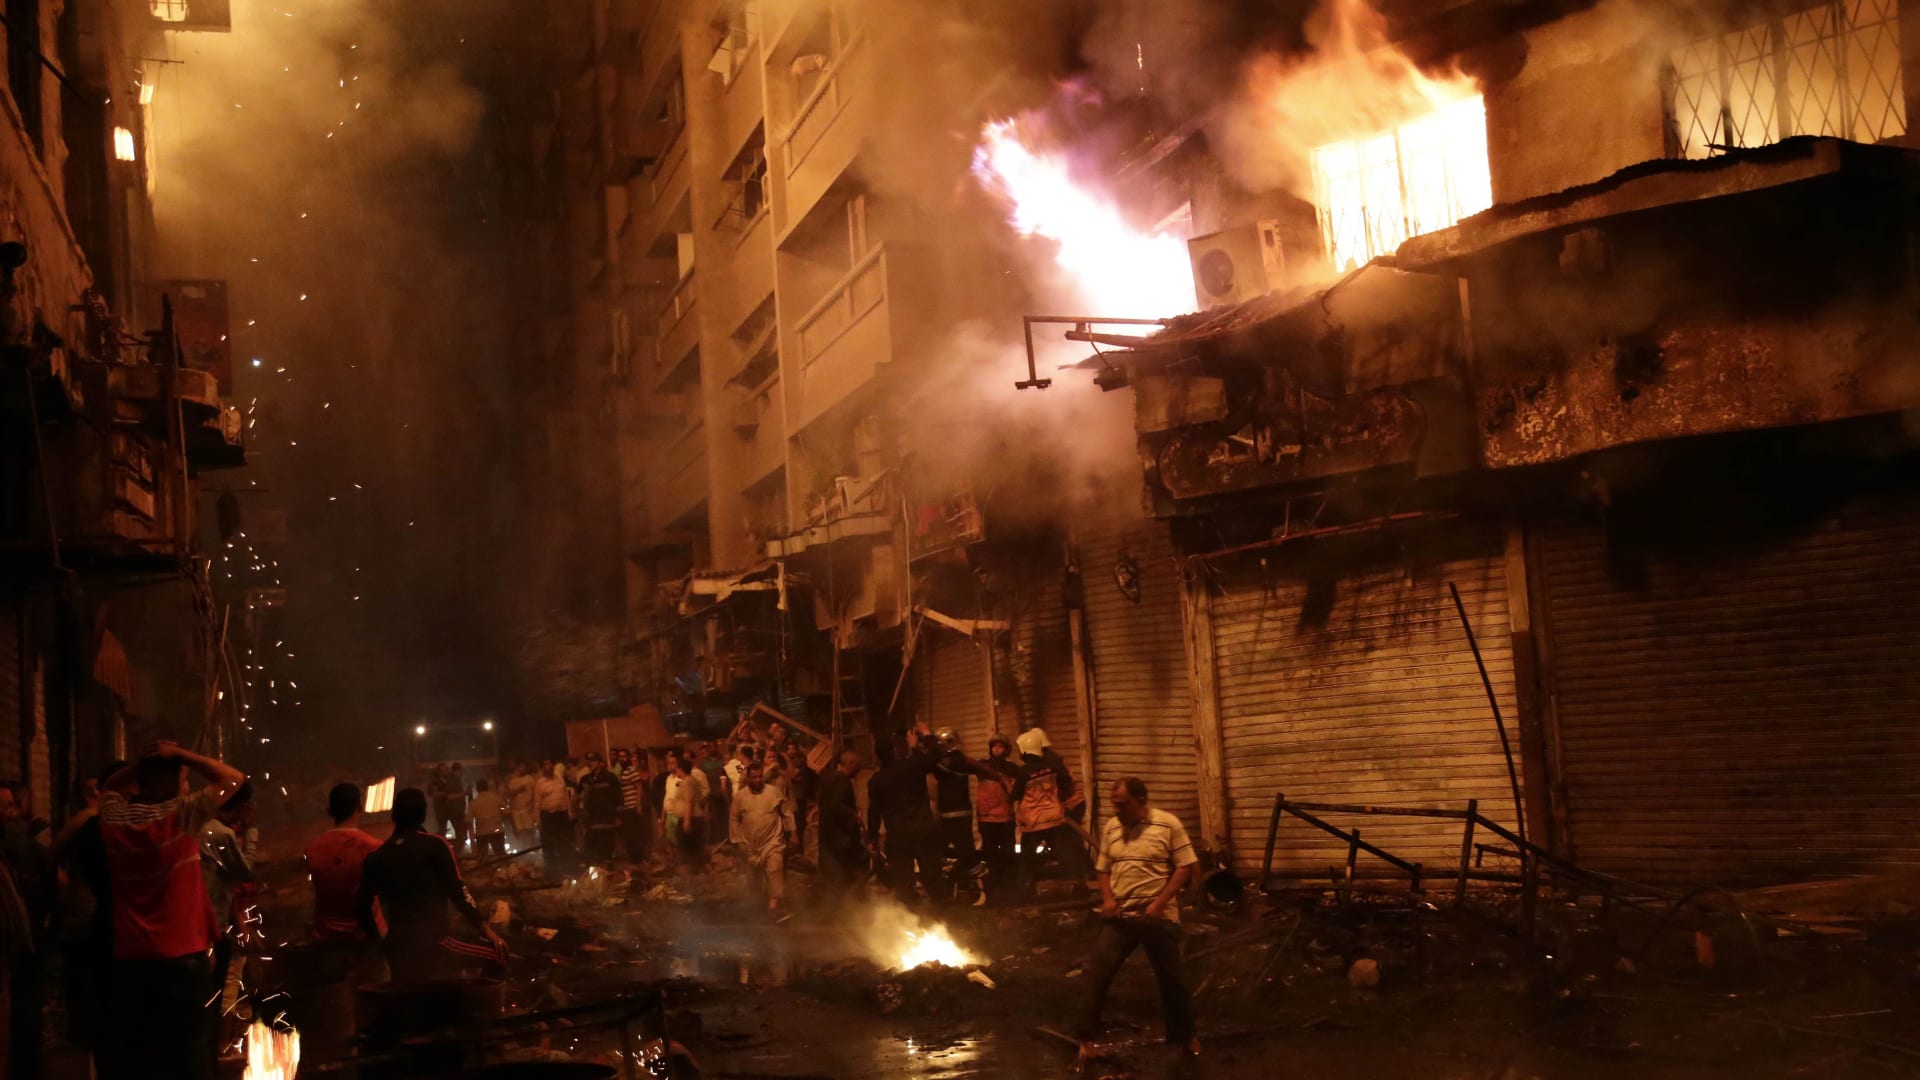 بالصور: حرائق القاهرة تزيد معاناة المواطنين.. خسائر بالملايين والفاعل مجهول  - CNN Arabic